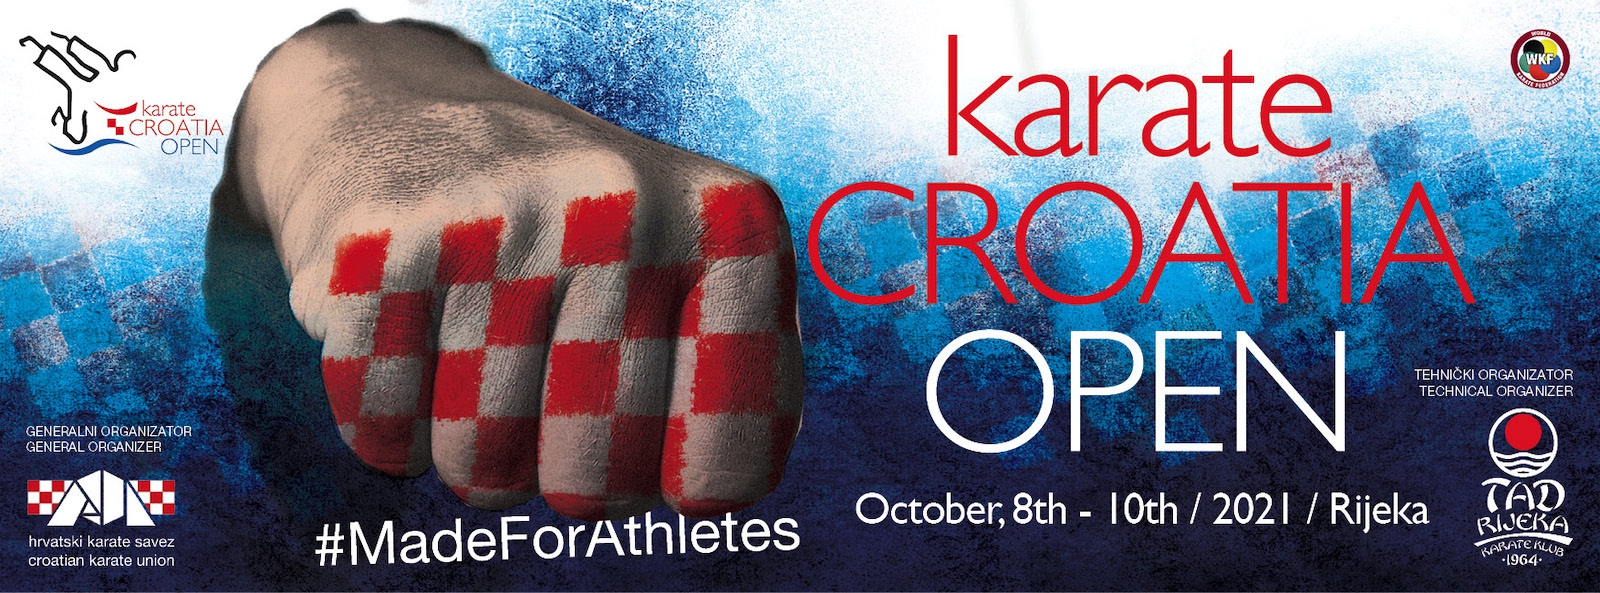 SET Online Croatia Karate Croatia Open